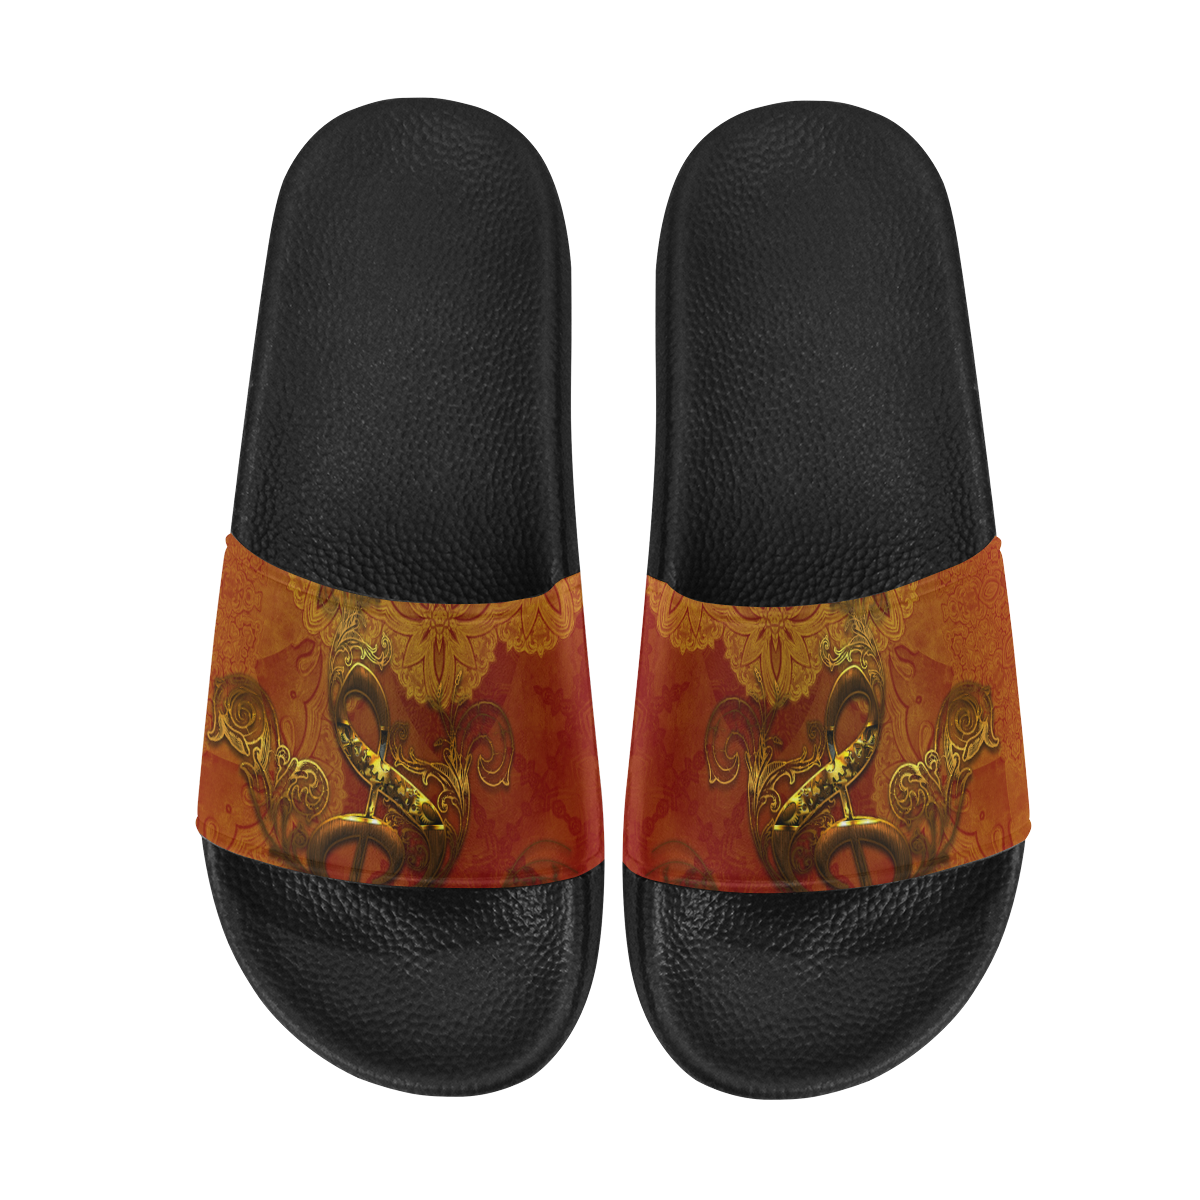 Music, clef in golden metal Men's Slide Sandals (Model 057)